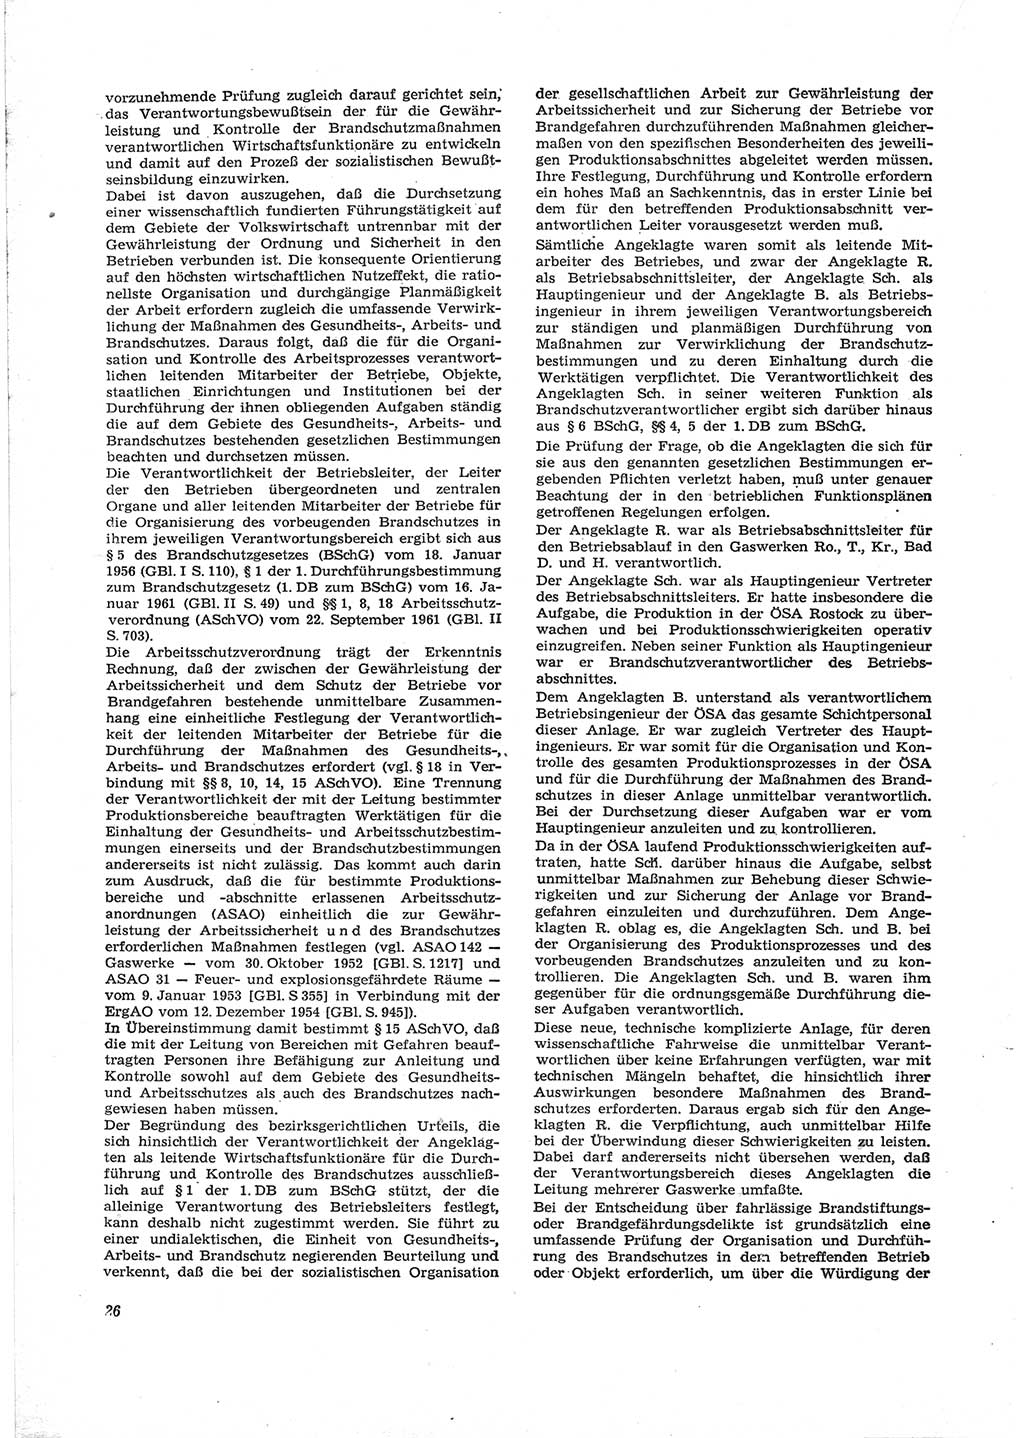 Neue Justiz (NJ), Zeitschrift für Recht und Rechtswissenschaft [Deutsche Demokratische Republik (DDR)], 18. Jahrgang 1964, Seite 26 (NJ DDR 1964, S. 26)